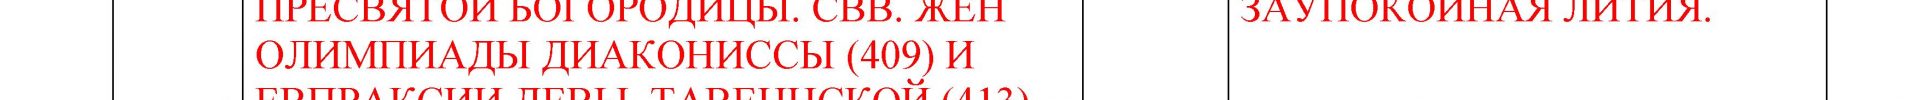 Расписание богослужений Преображенского храма деревни Спас-Каменка на АВГУСТ 2022 года